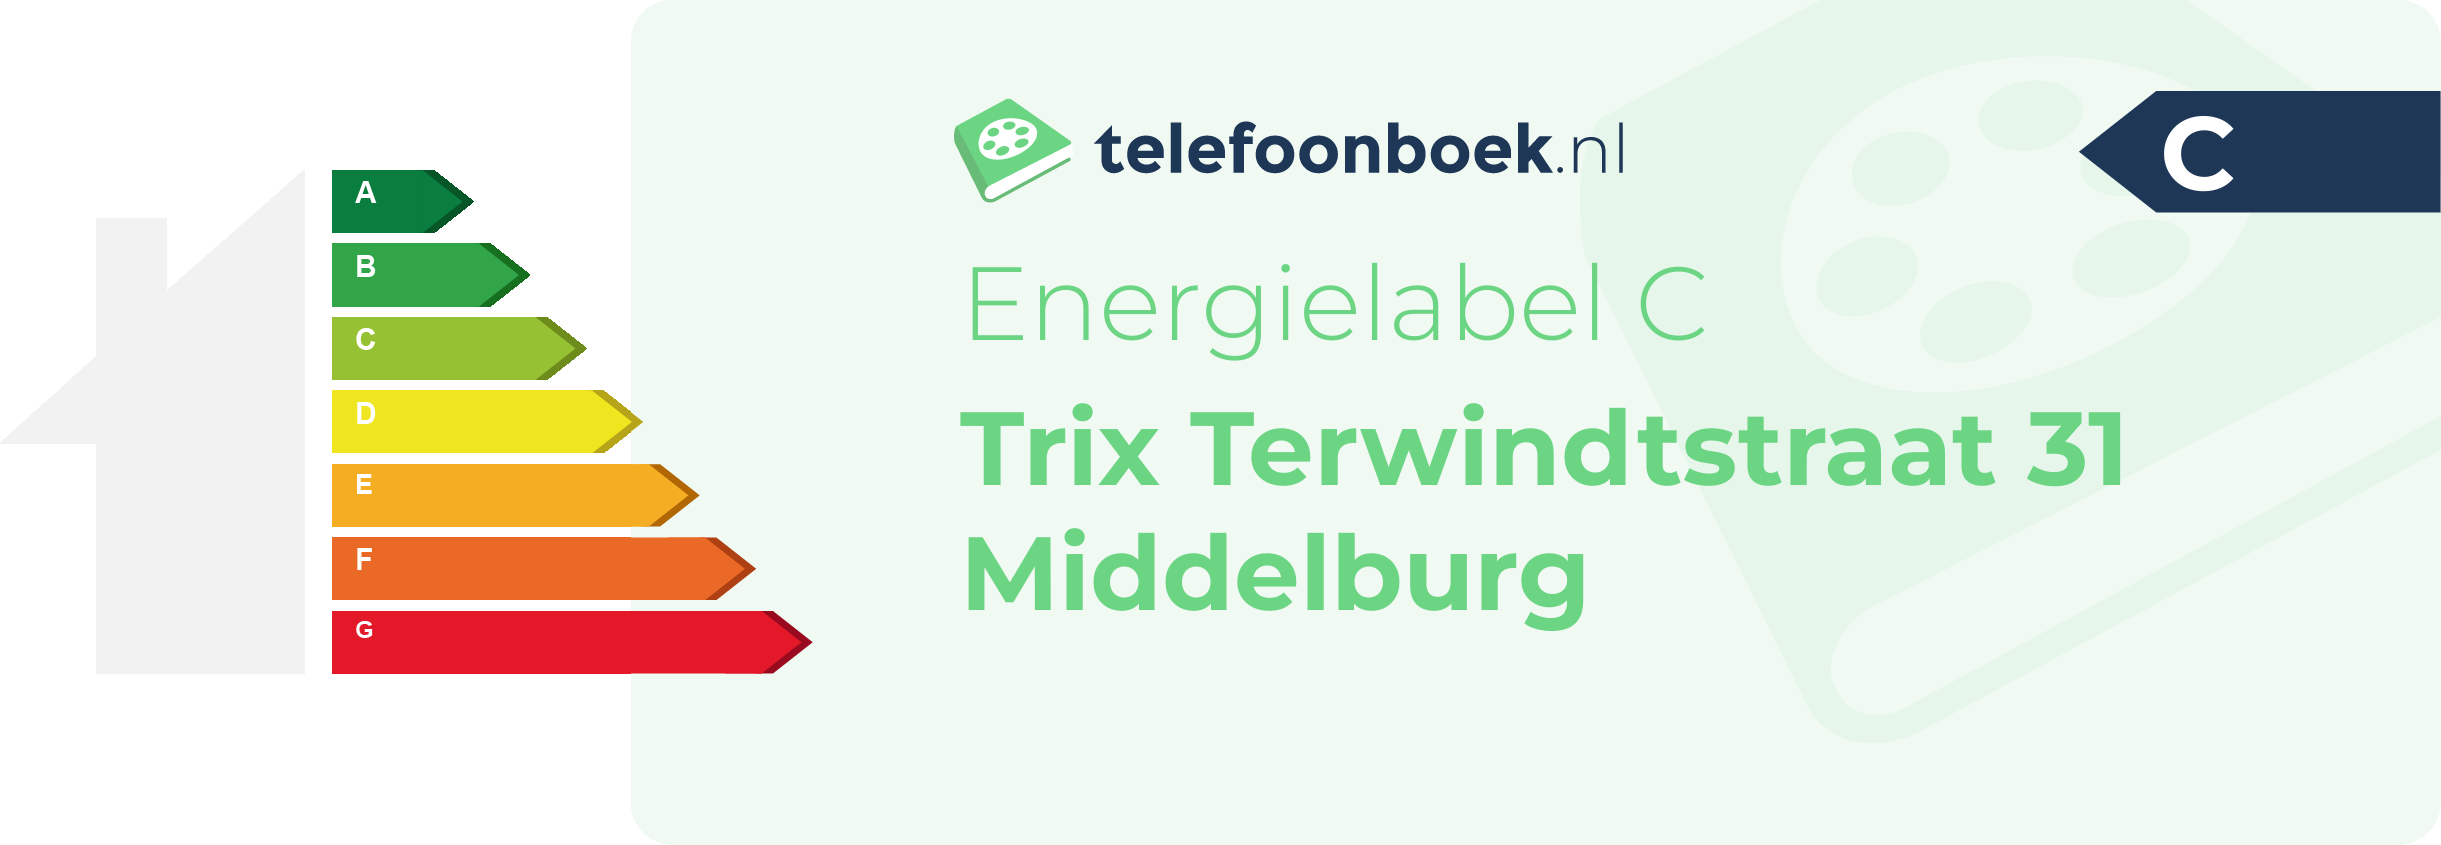 Energielabel Trix Terwindtstraat 31 Middelburg